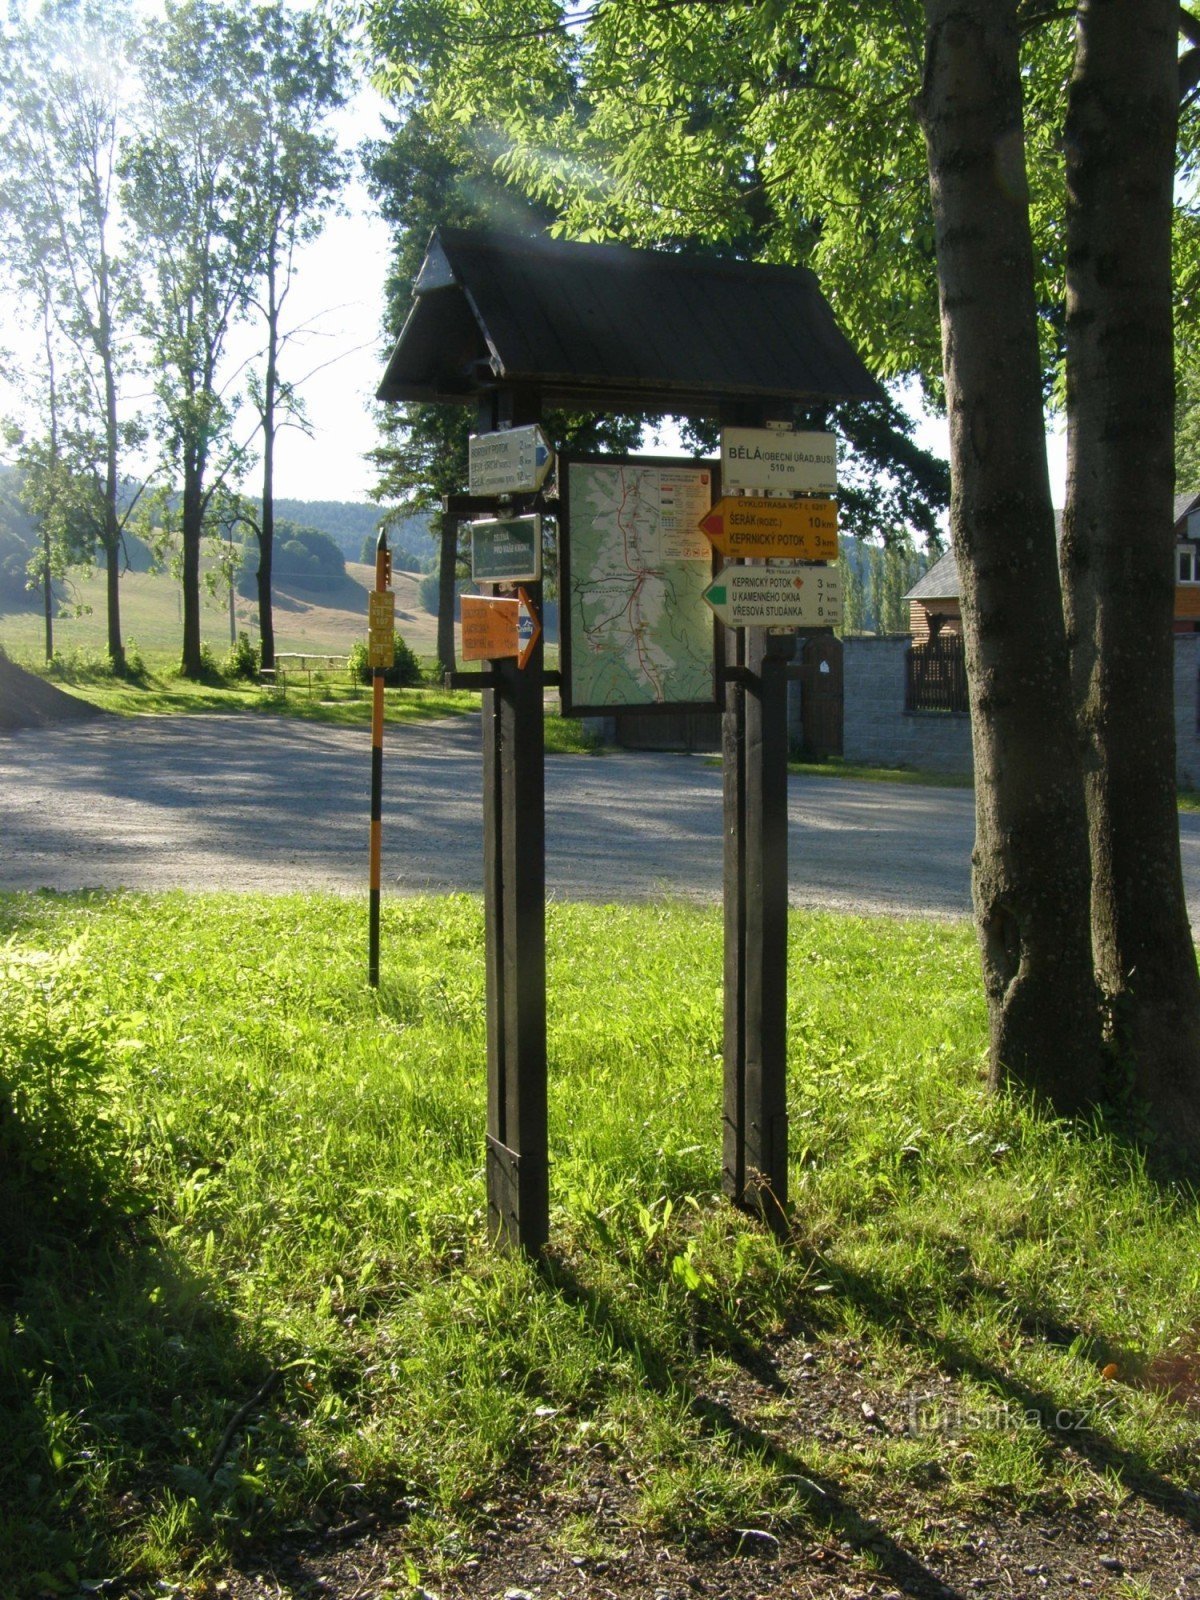 răscruce turistică Bělá pod Pradědem - autobuz, birou municipal